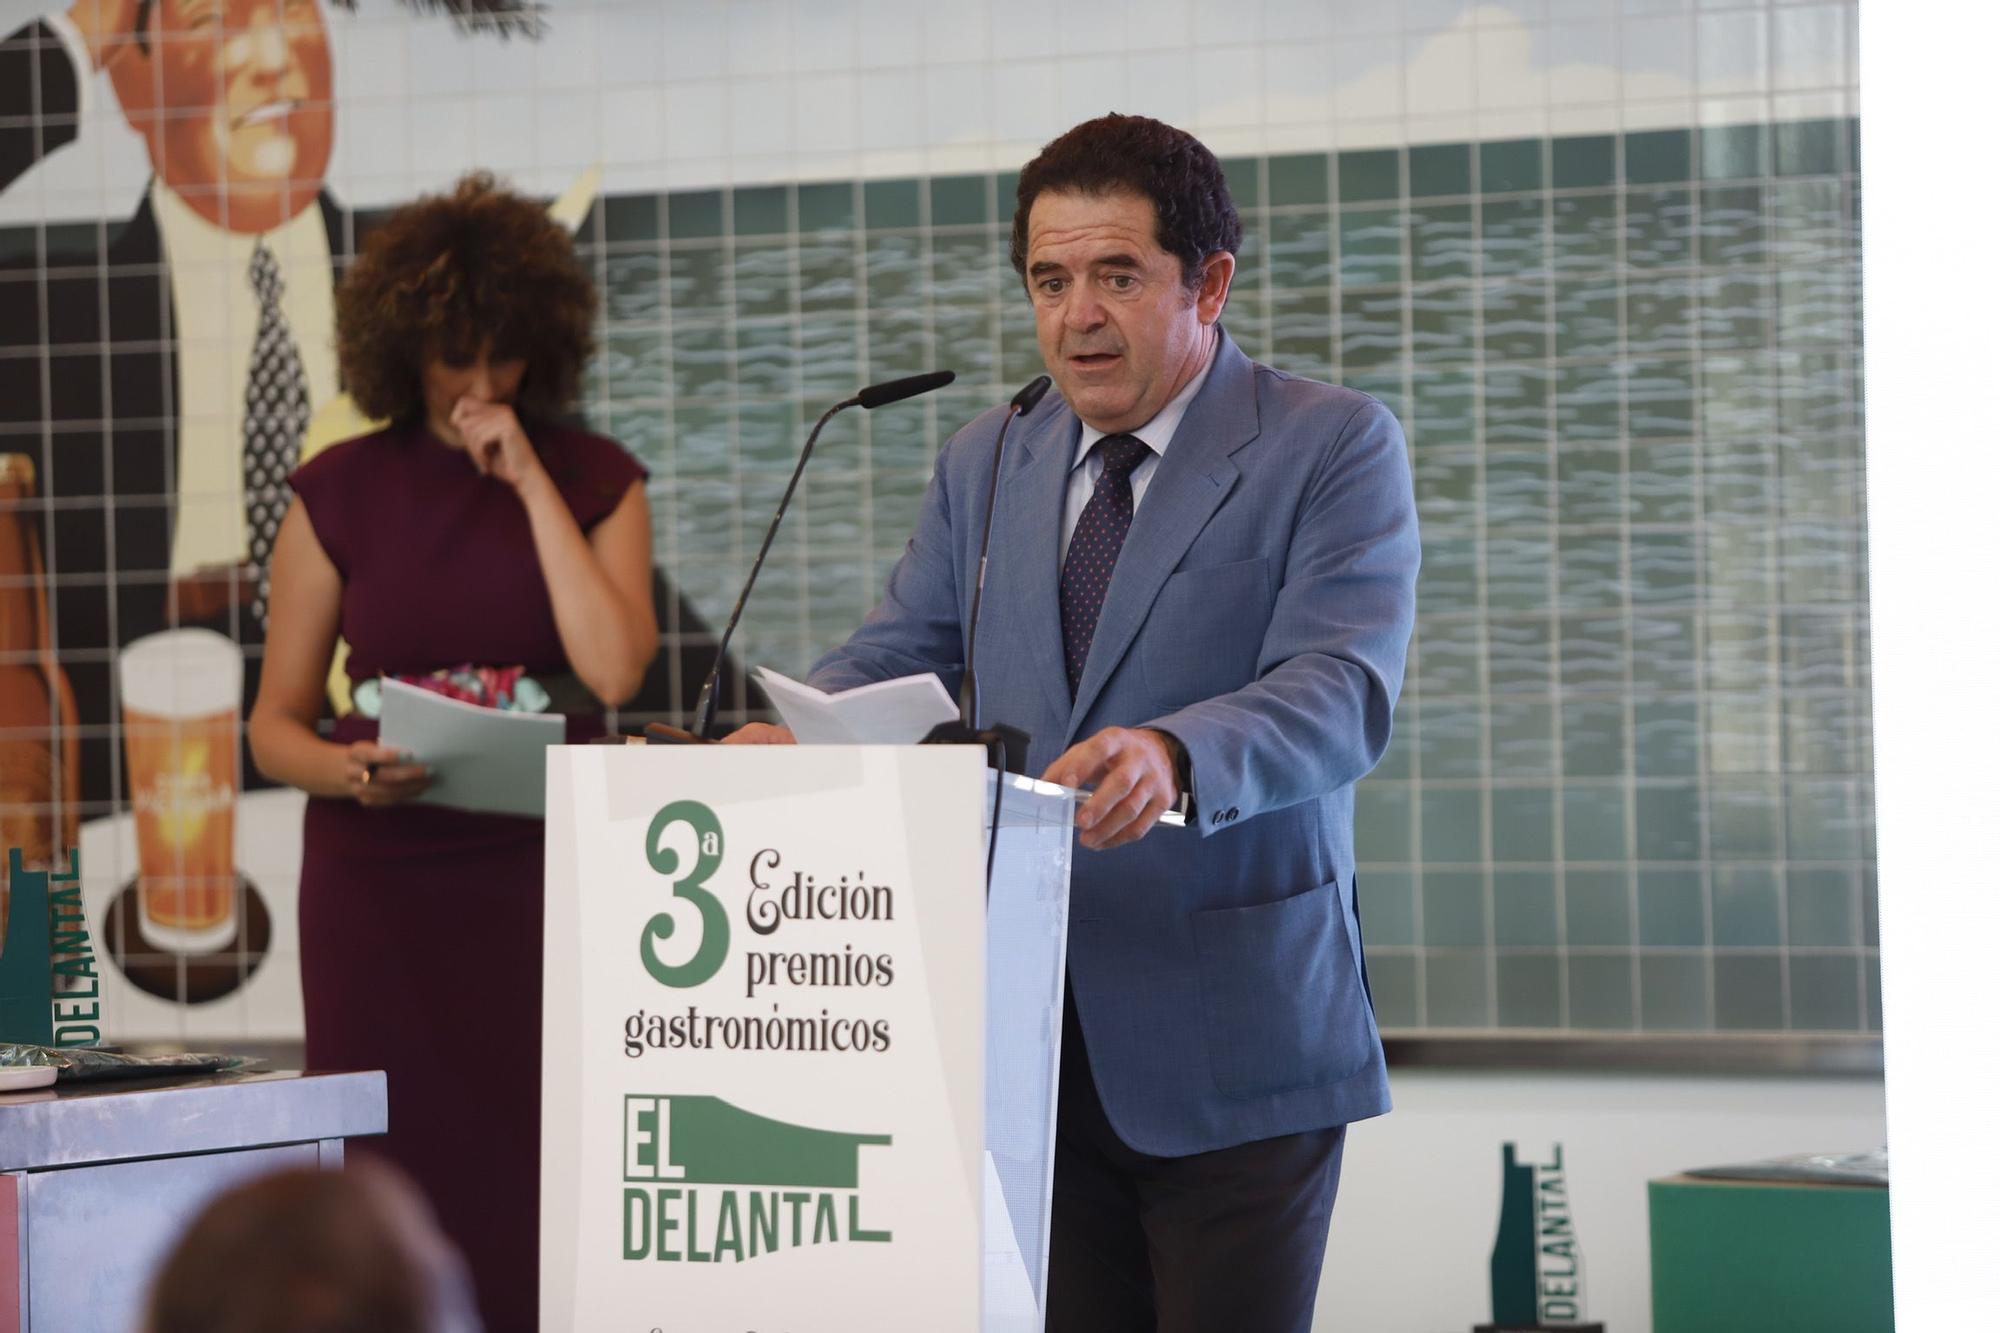 Gala de los premios El Delantal, en Cervezas Victoria